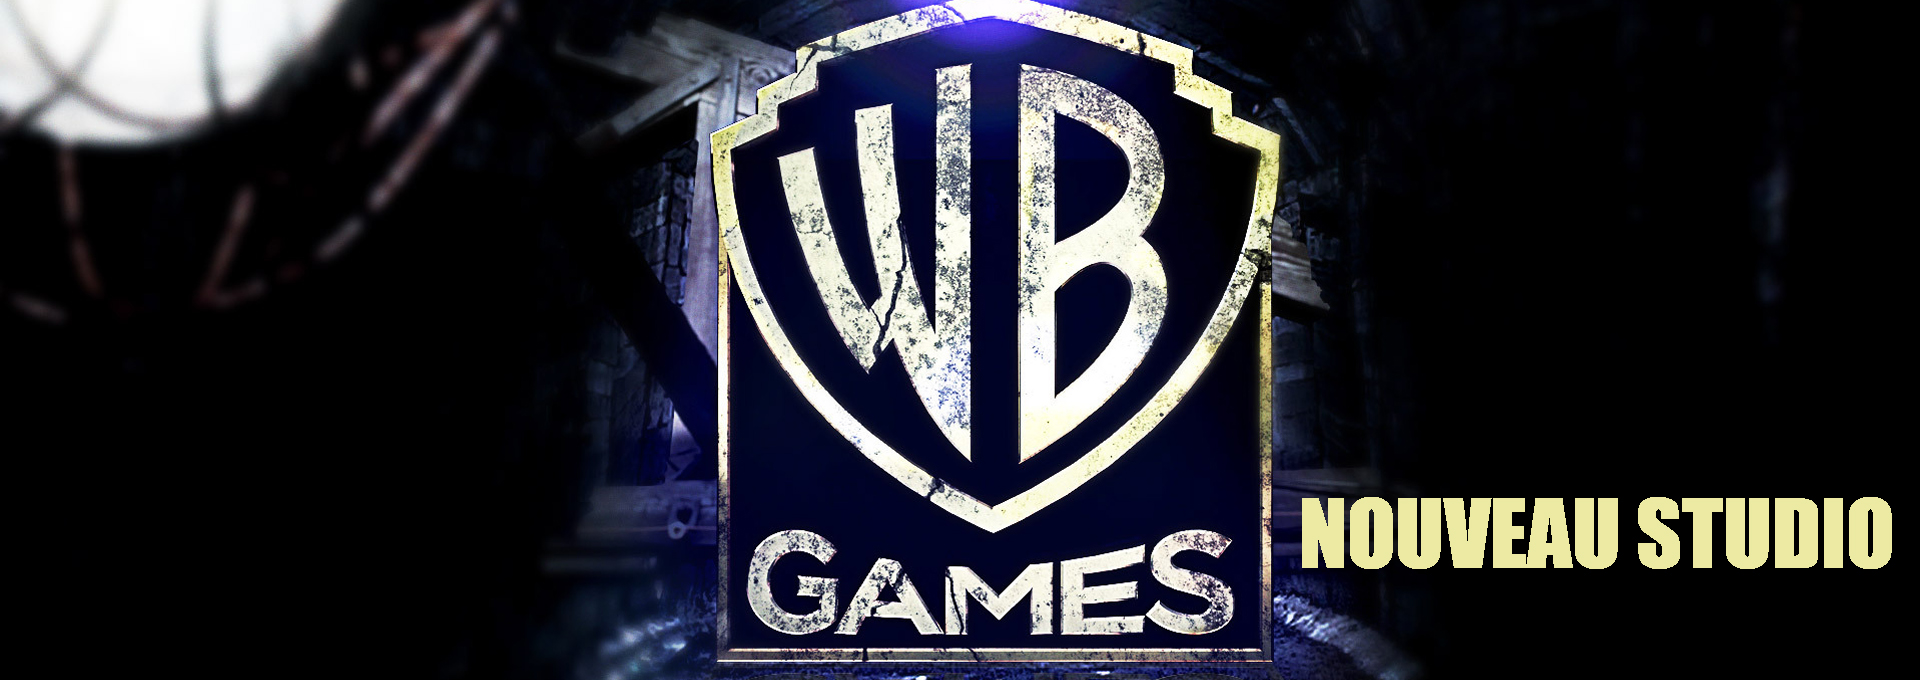 Wb games nouveau studio